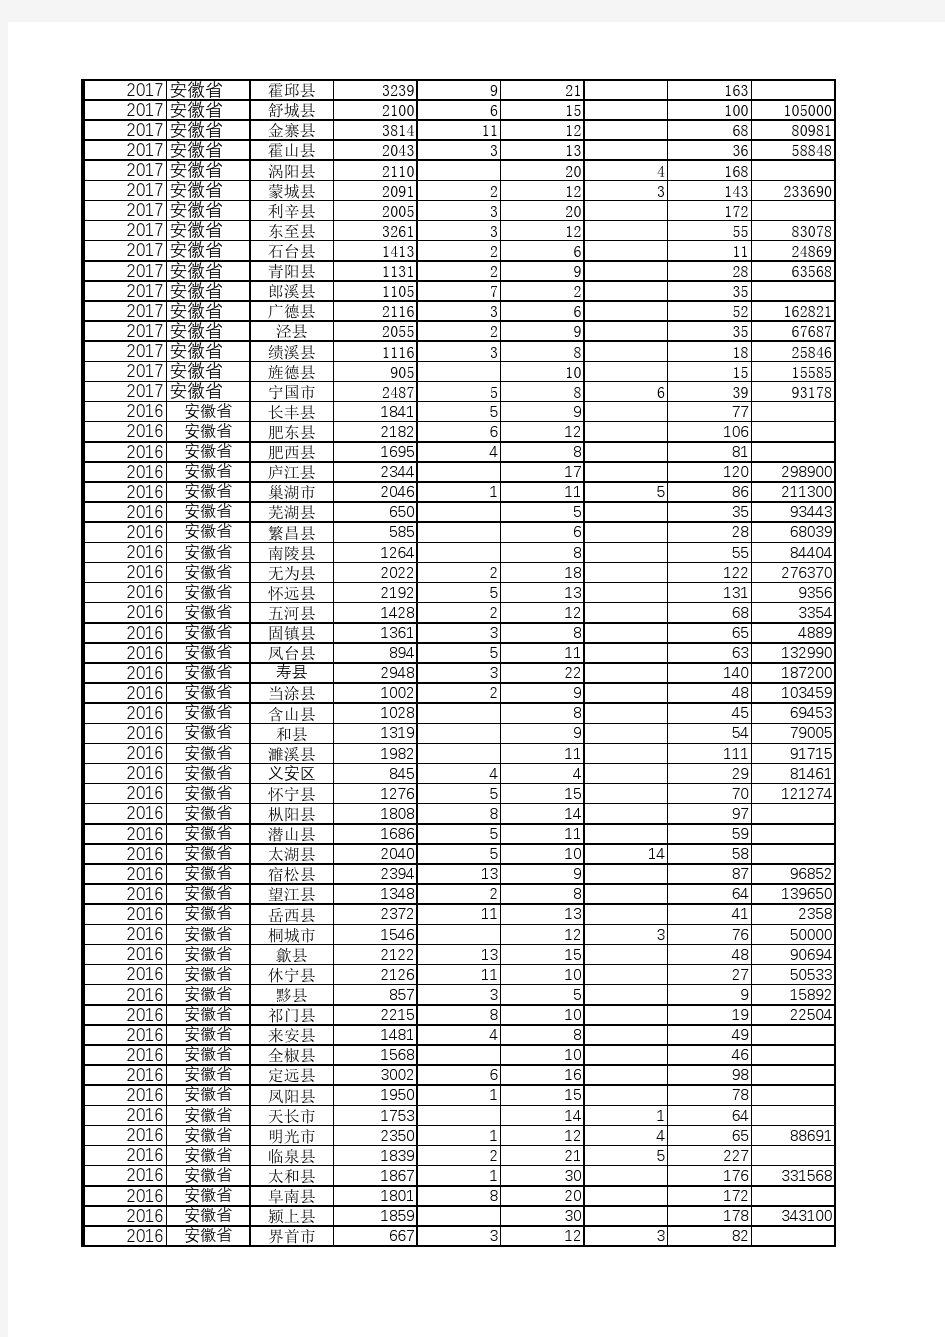 中国县域统计年鉴数据处理：安徽各区县2013-2017多年宏观经济指标数据分析对比